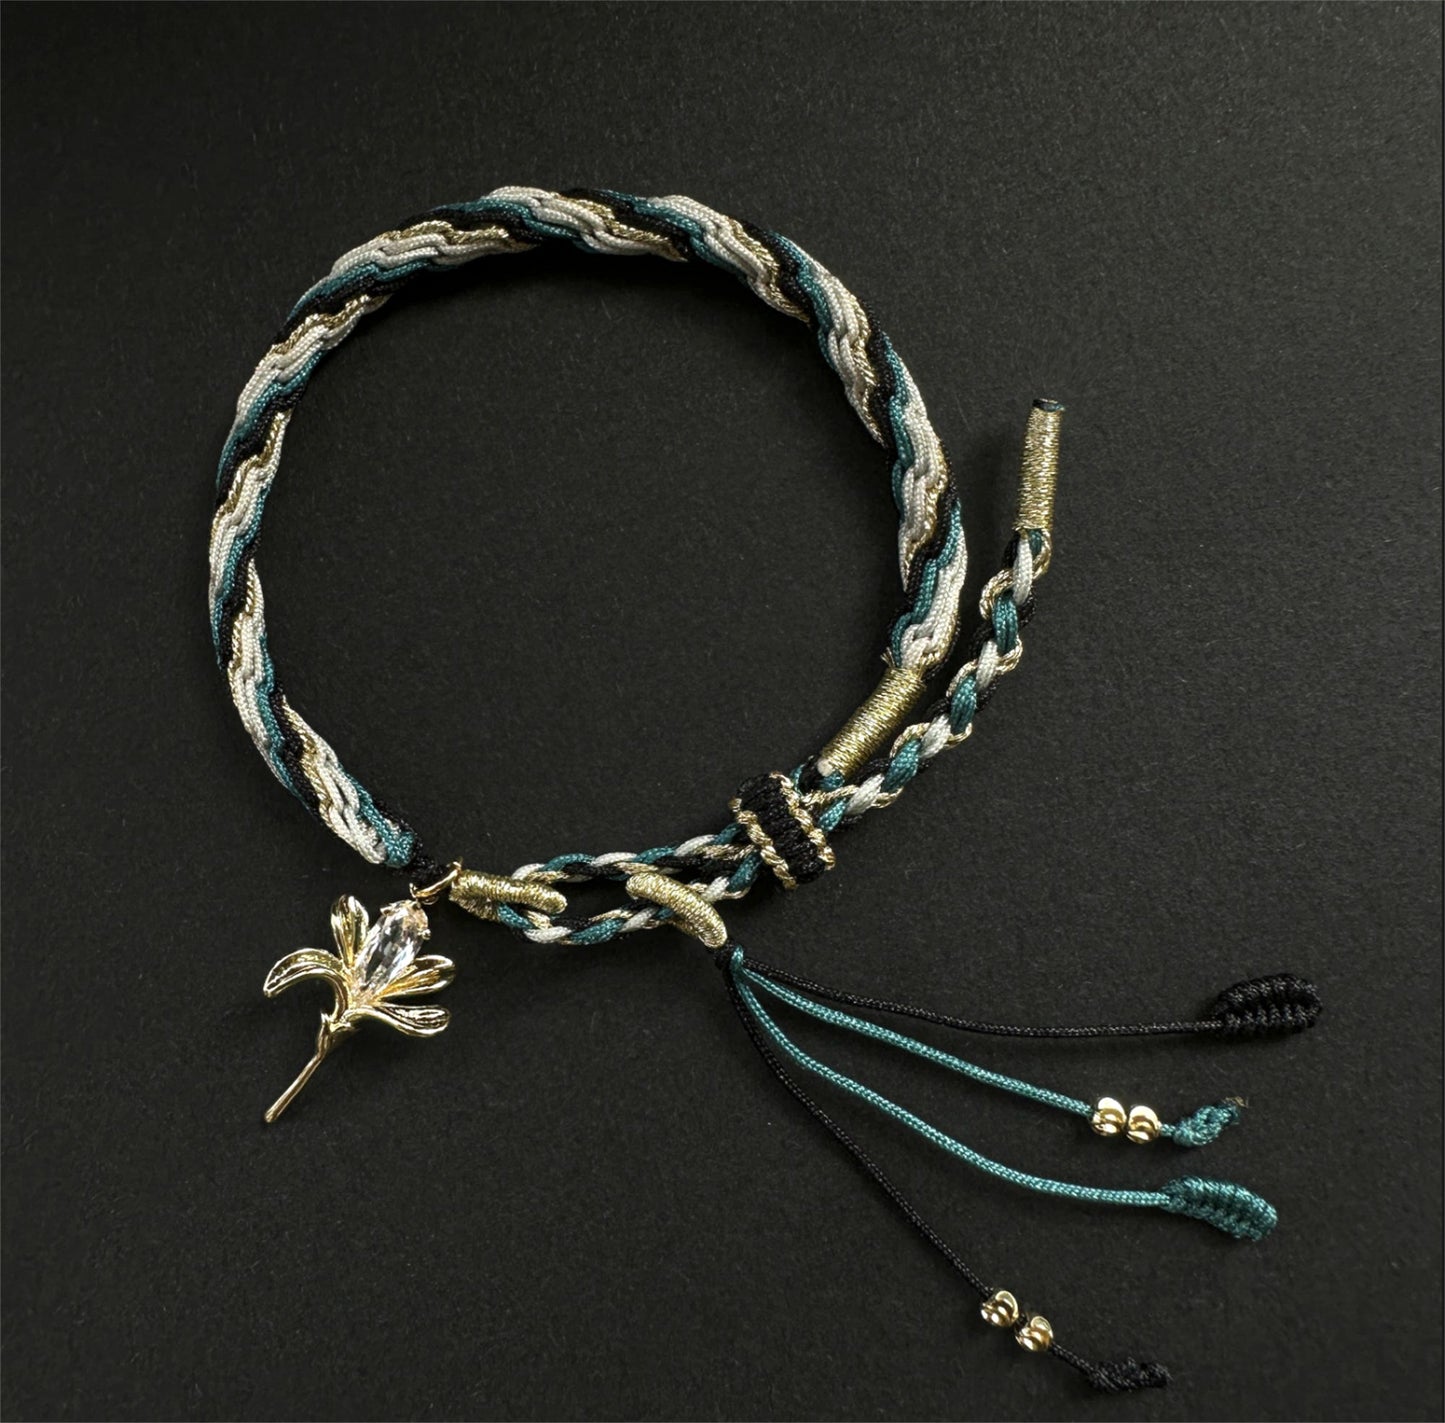 Honkai Star Rail Welt Bracelet Hand-Woven Bracelet